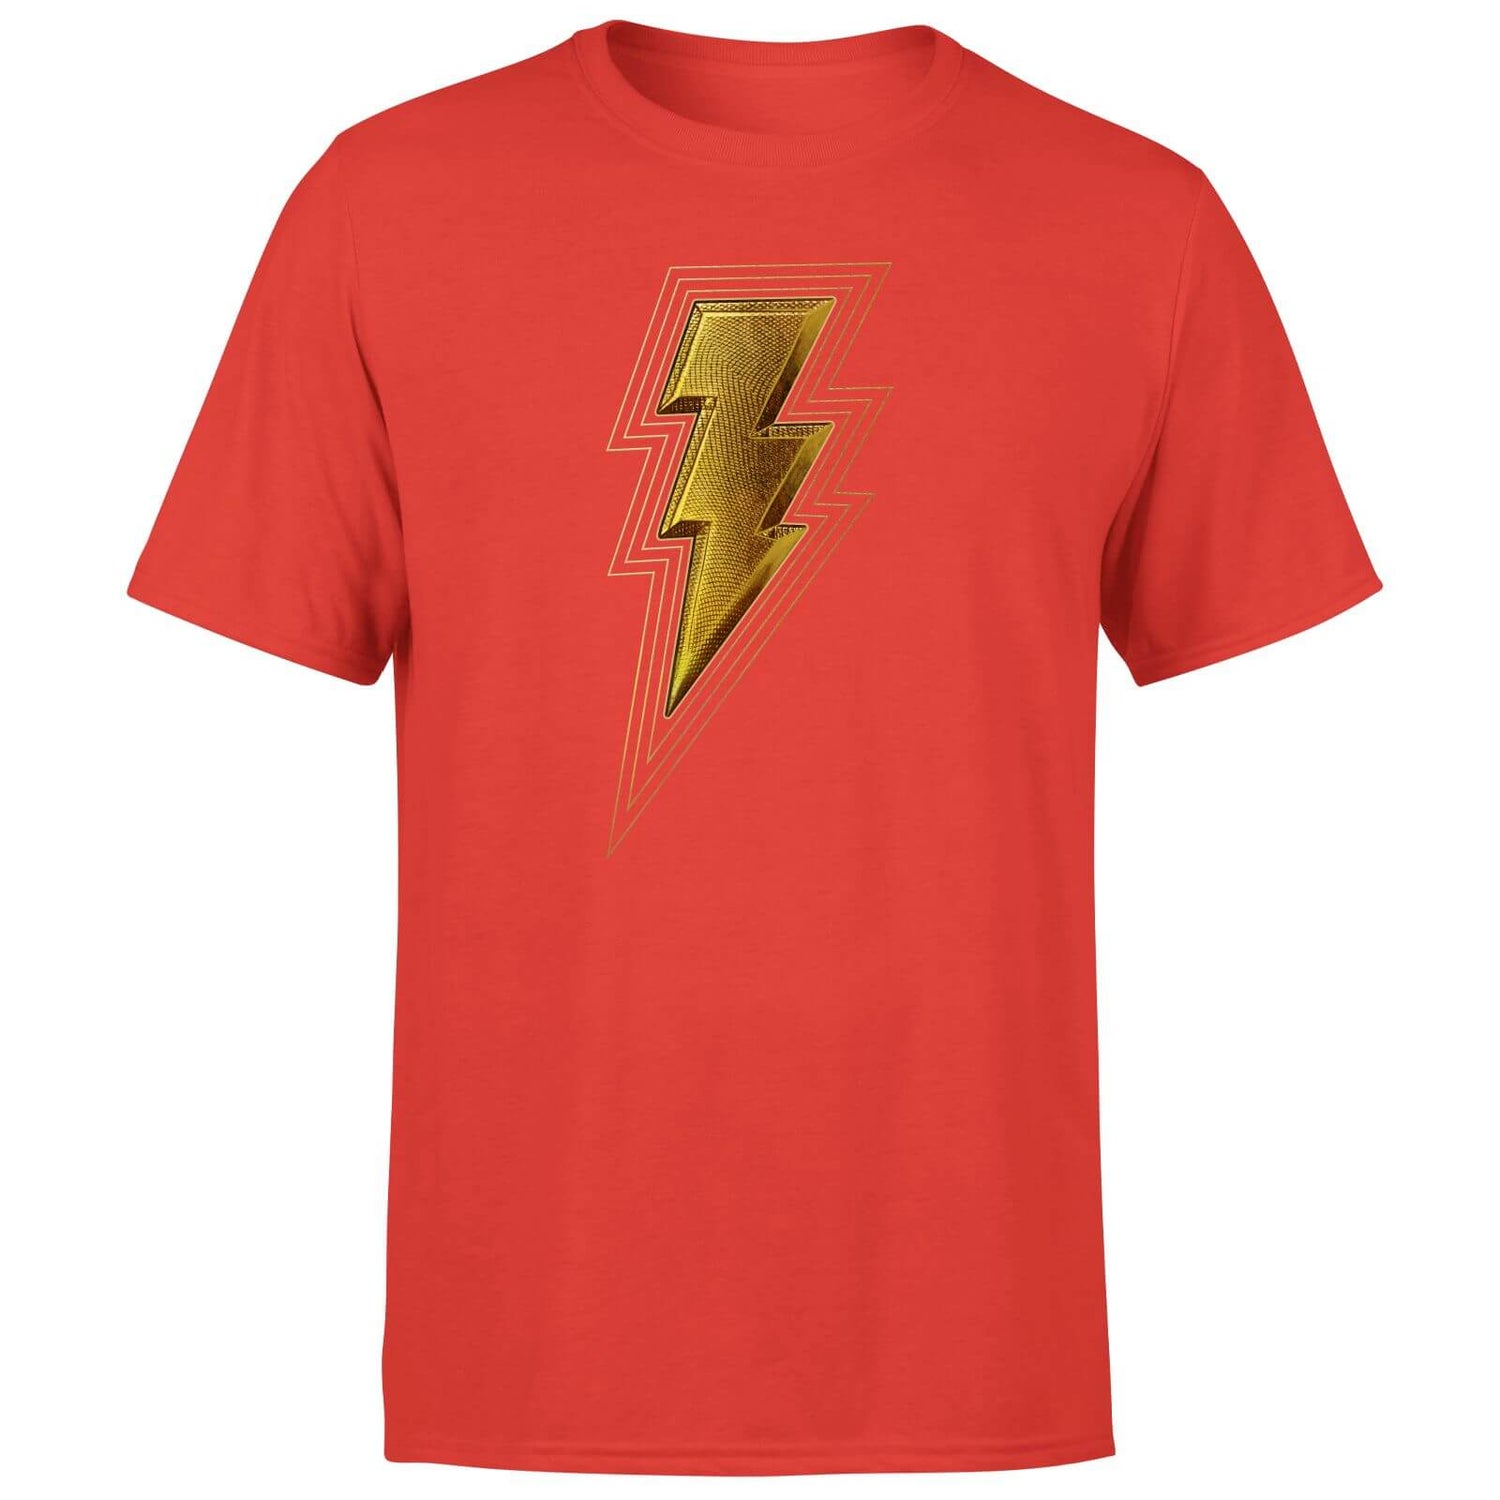 Shazam! Fury of the Gods Gold Bolt Unisex T-Shirt - Red